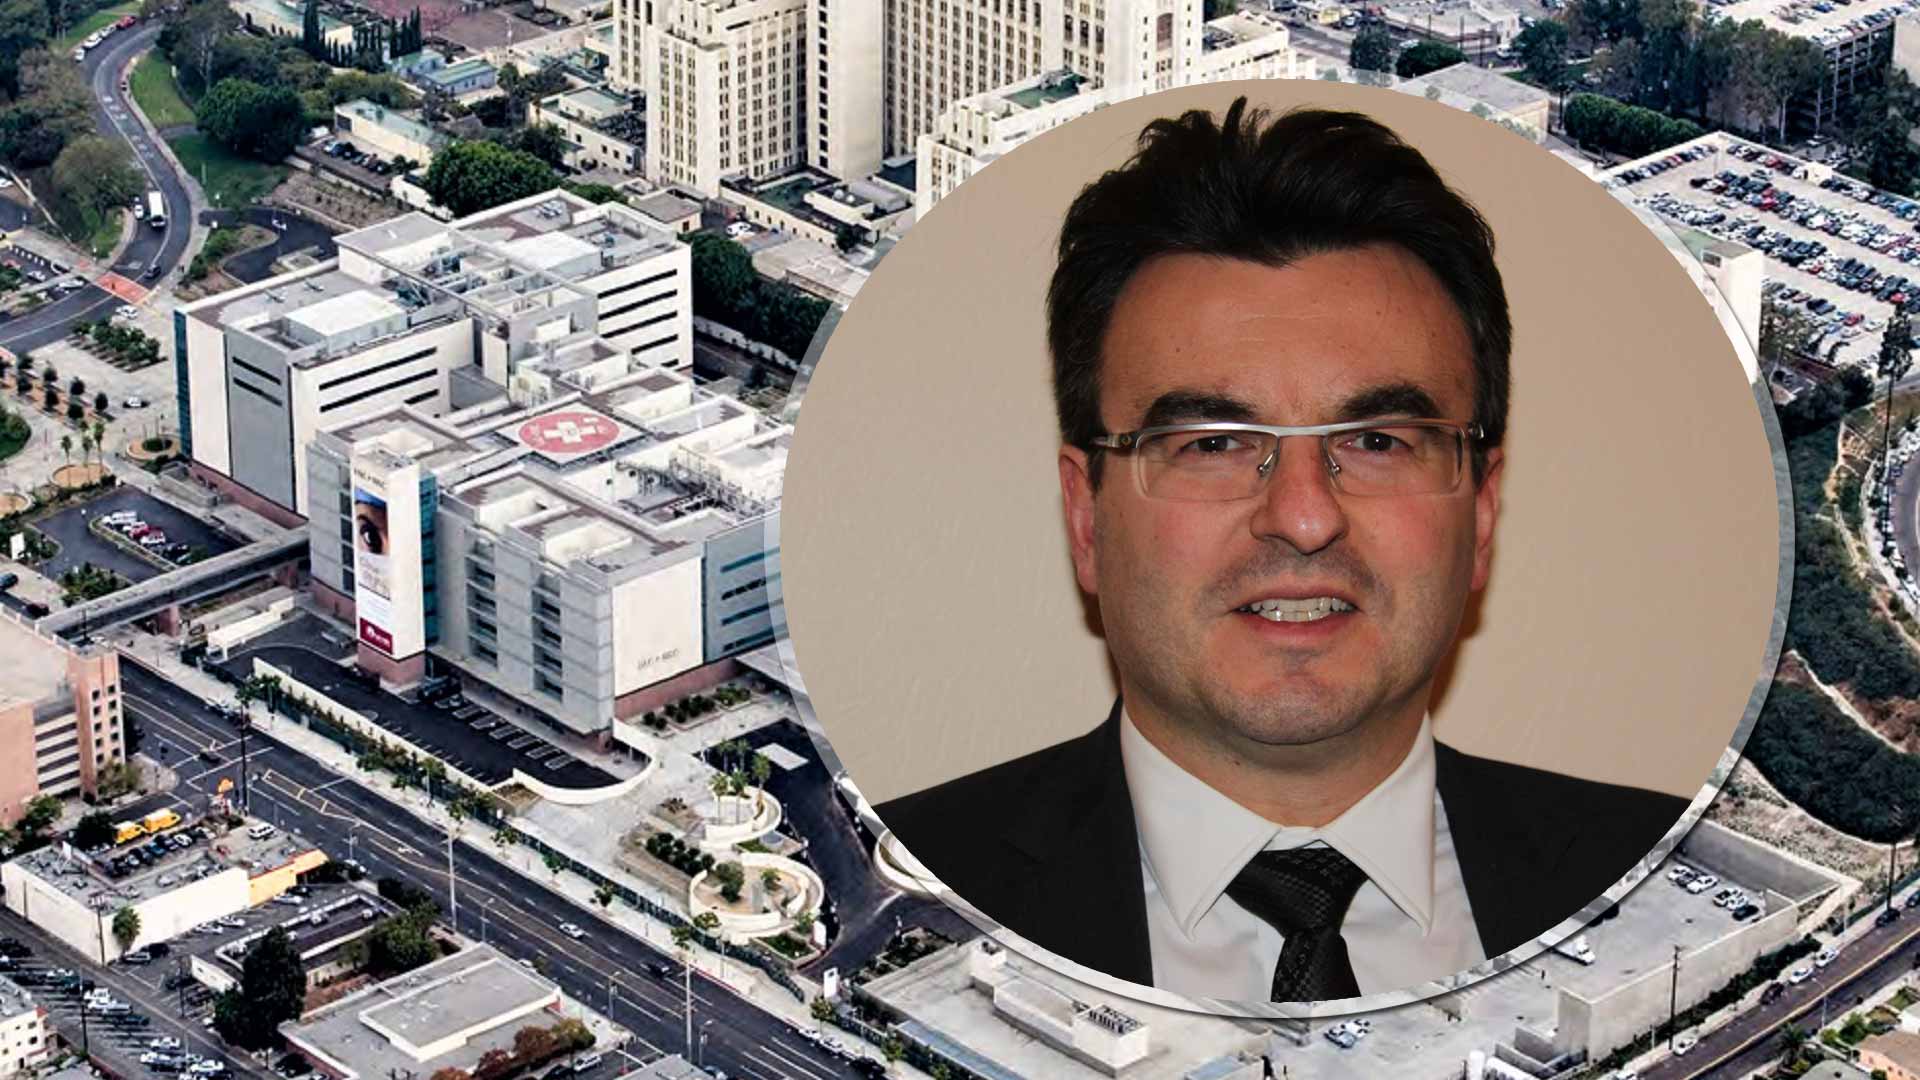 Δρ. Σταθόπουλος: Ο Έλληνας νευροχειρουργός που έχει πατεντάρει παγκοσμίως δύο ογκολογικά εμβόλια μέσα από τη ERC